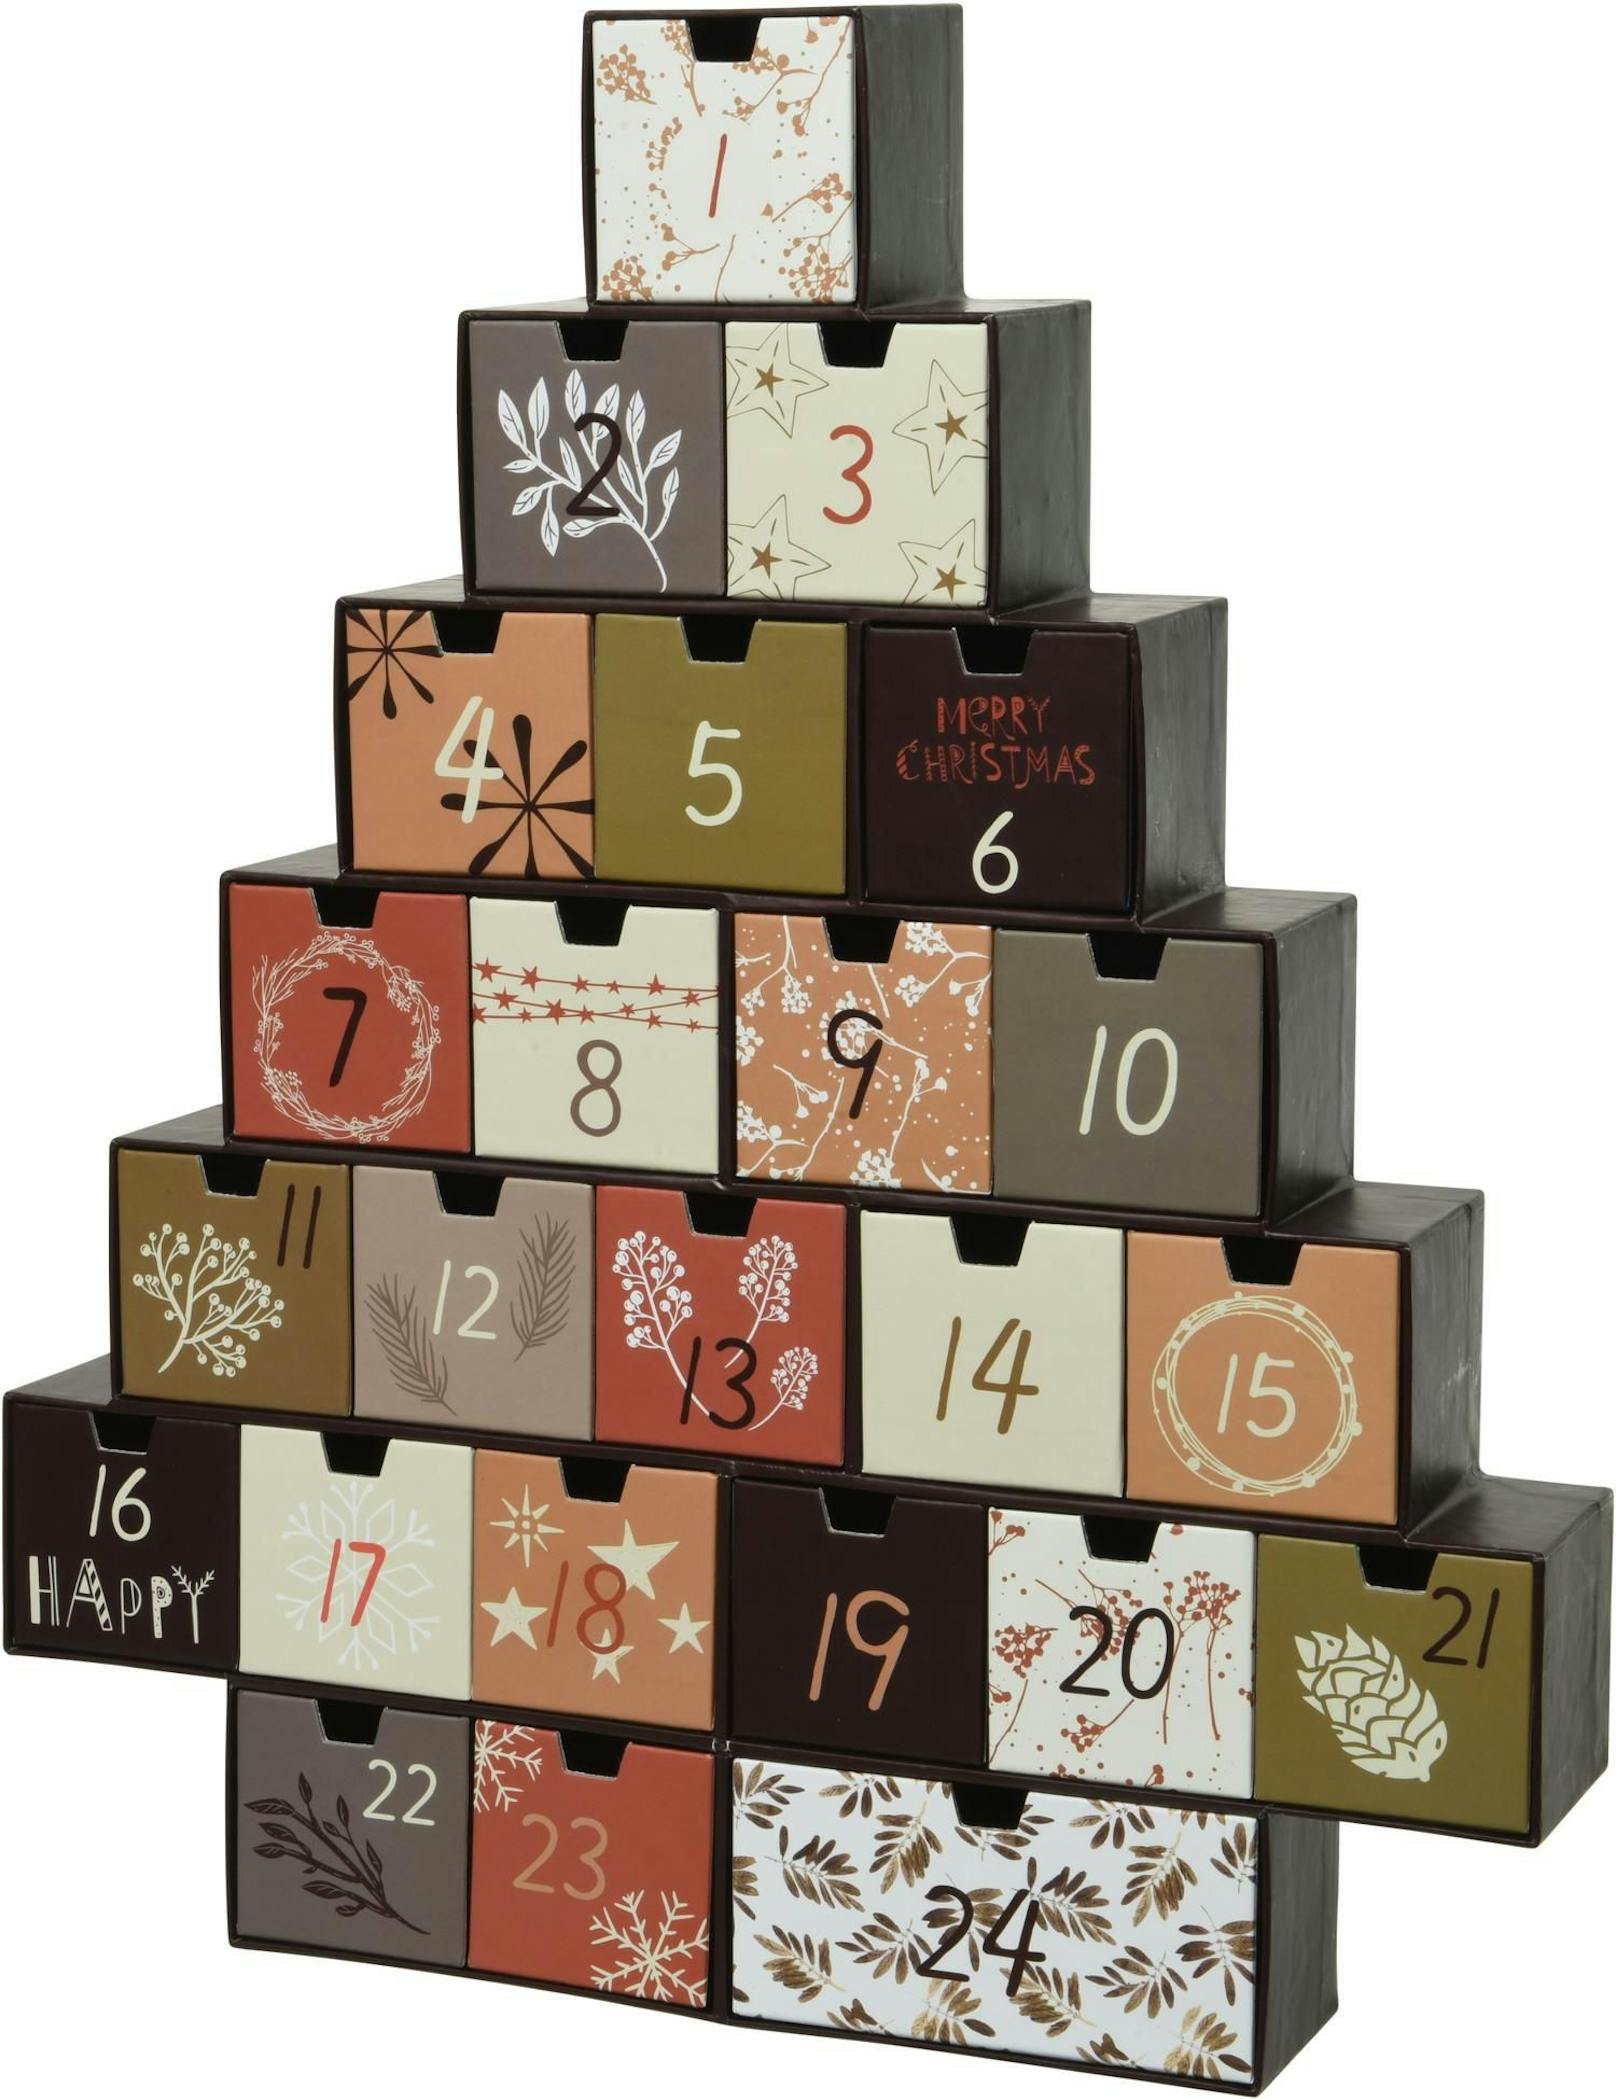 Der Adventkalender&nbsp;Riko aus Holz kommt in Weihnachtsbaumform daher. Erhältlich bei <a href="https://www.westwingnow.de/adventskalender-riko-130634.html">WestwingNow</a> um 39,99 Euro.